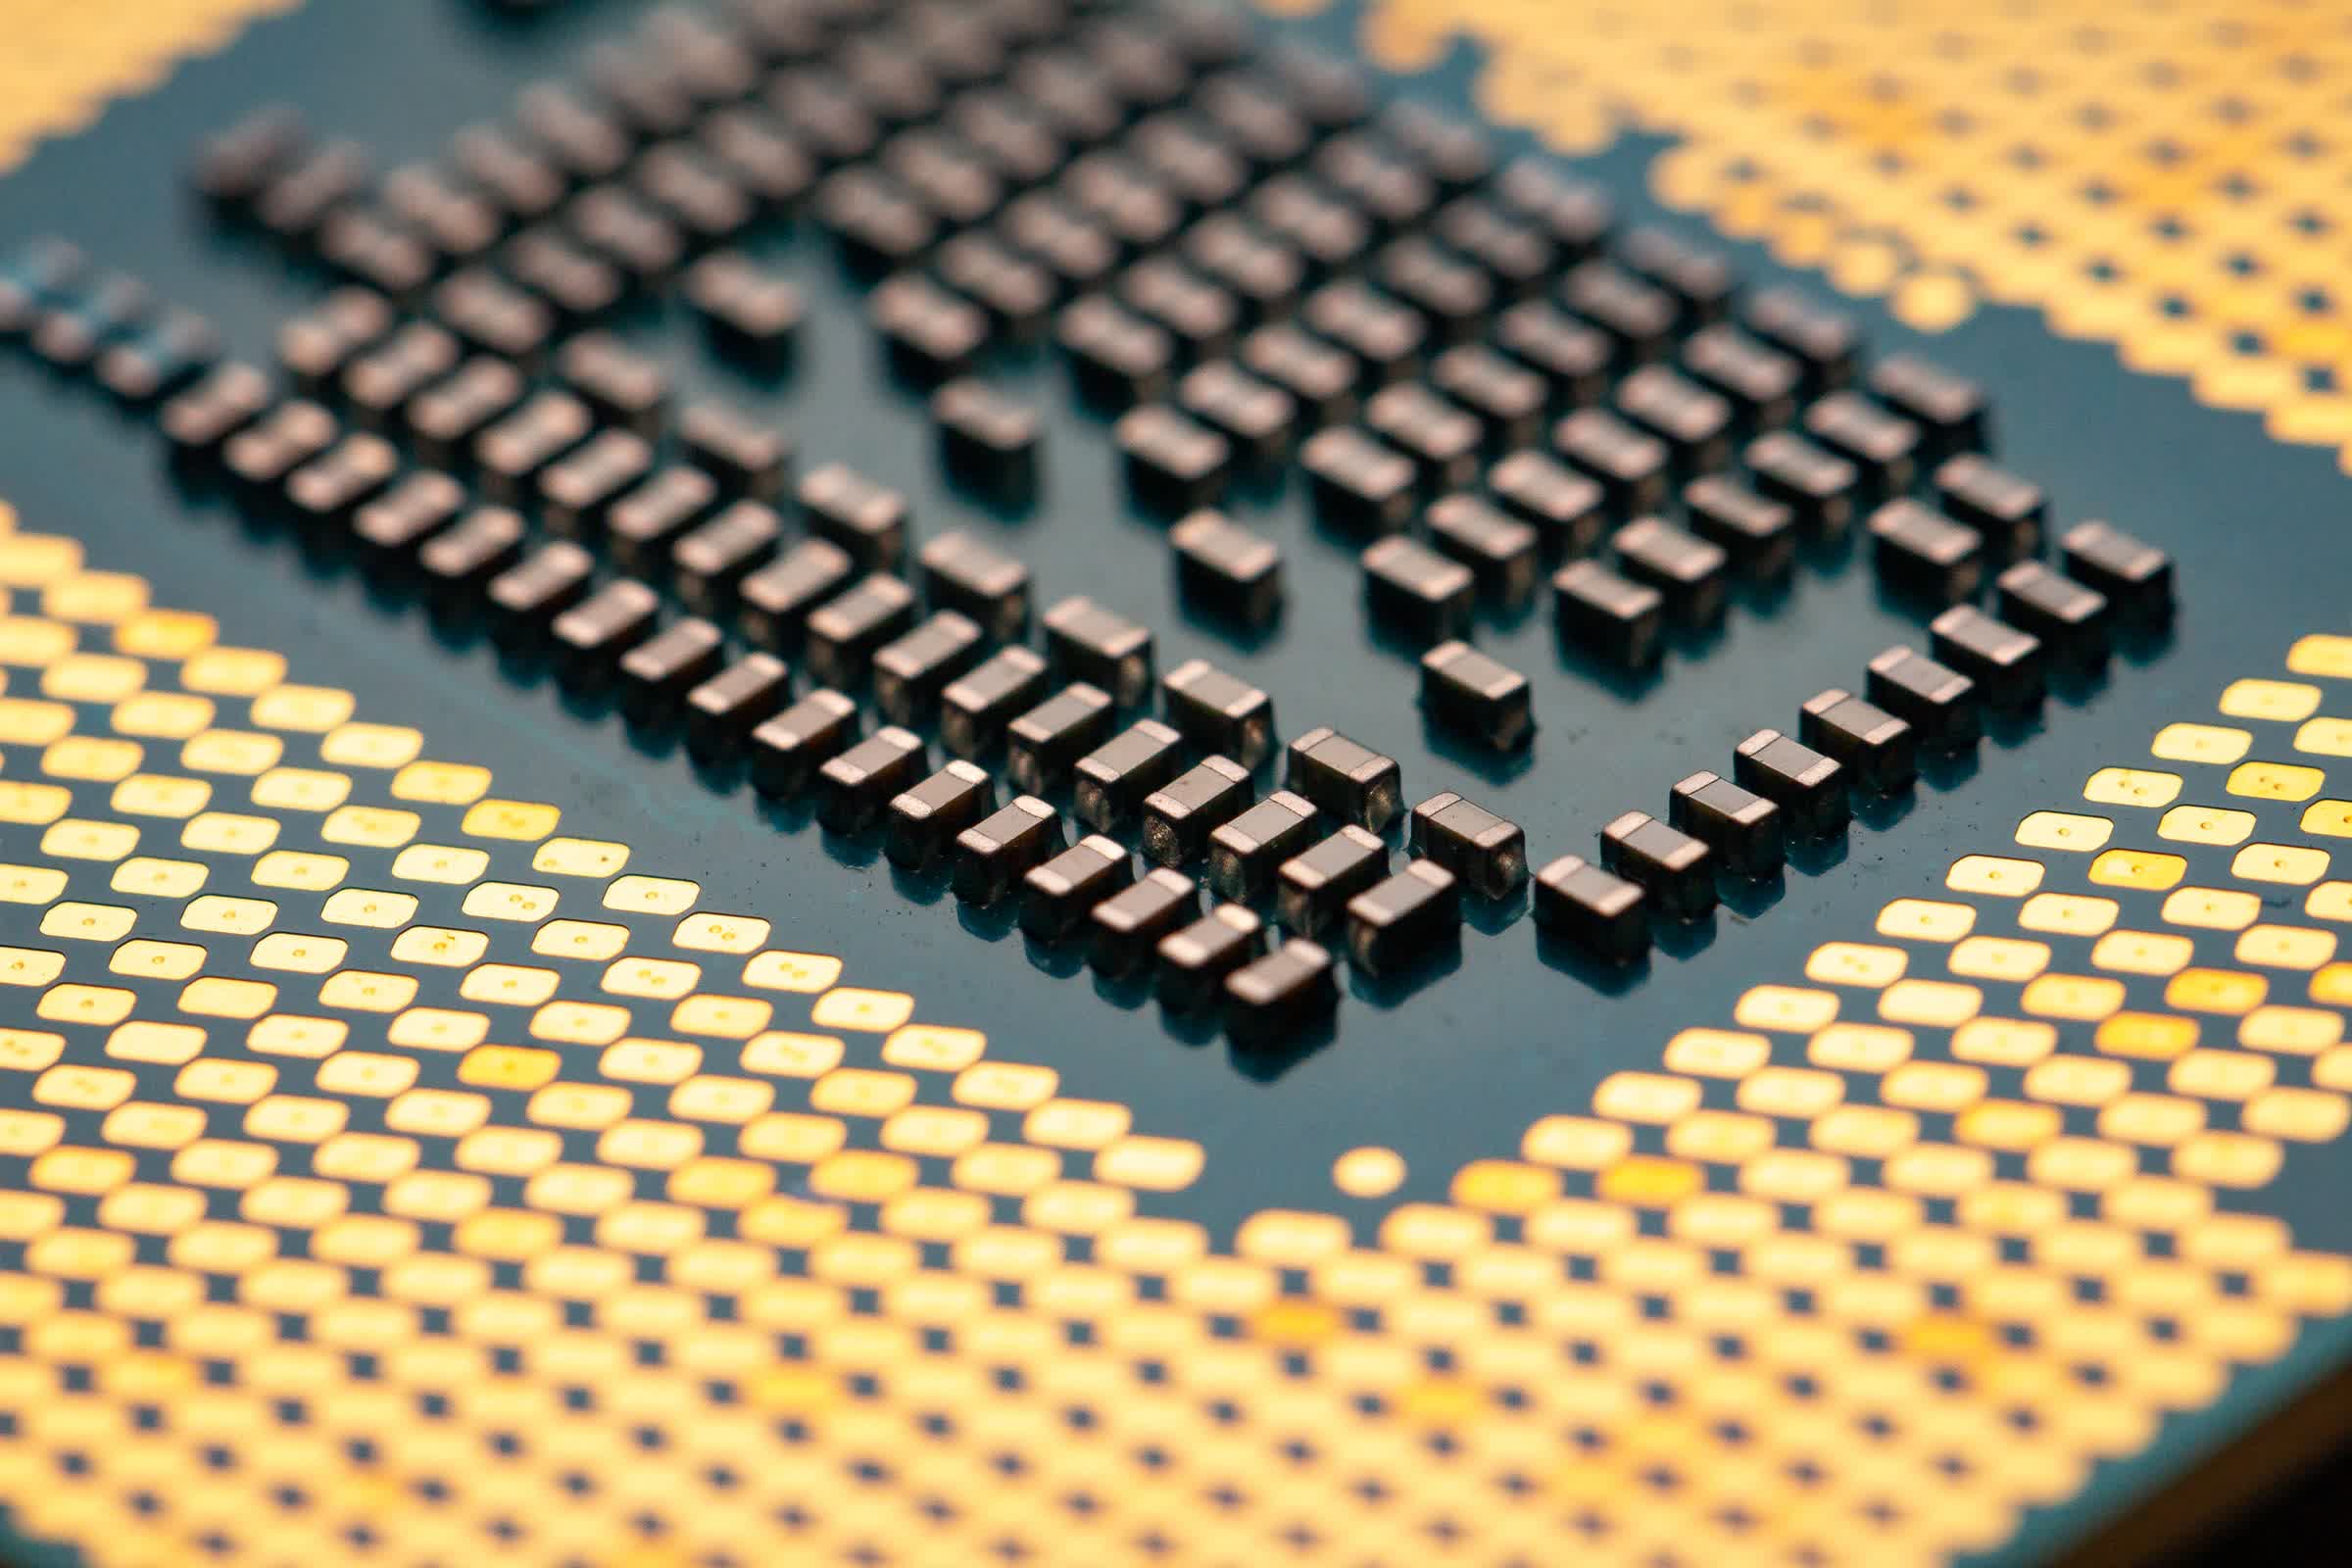 AMD hits highest x86 market share ever amid desktop CPU decline